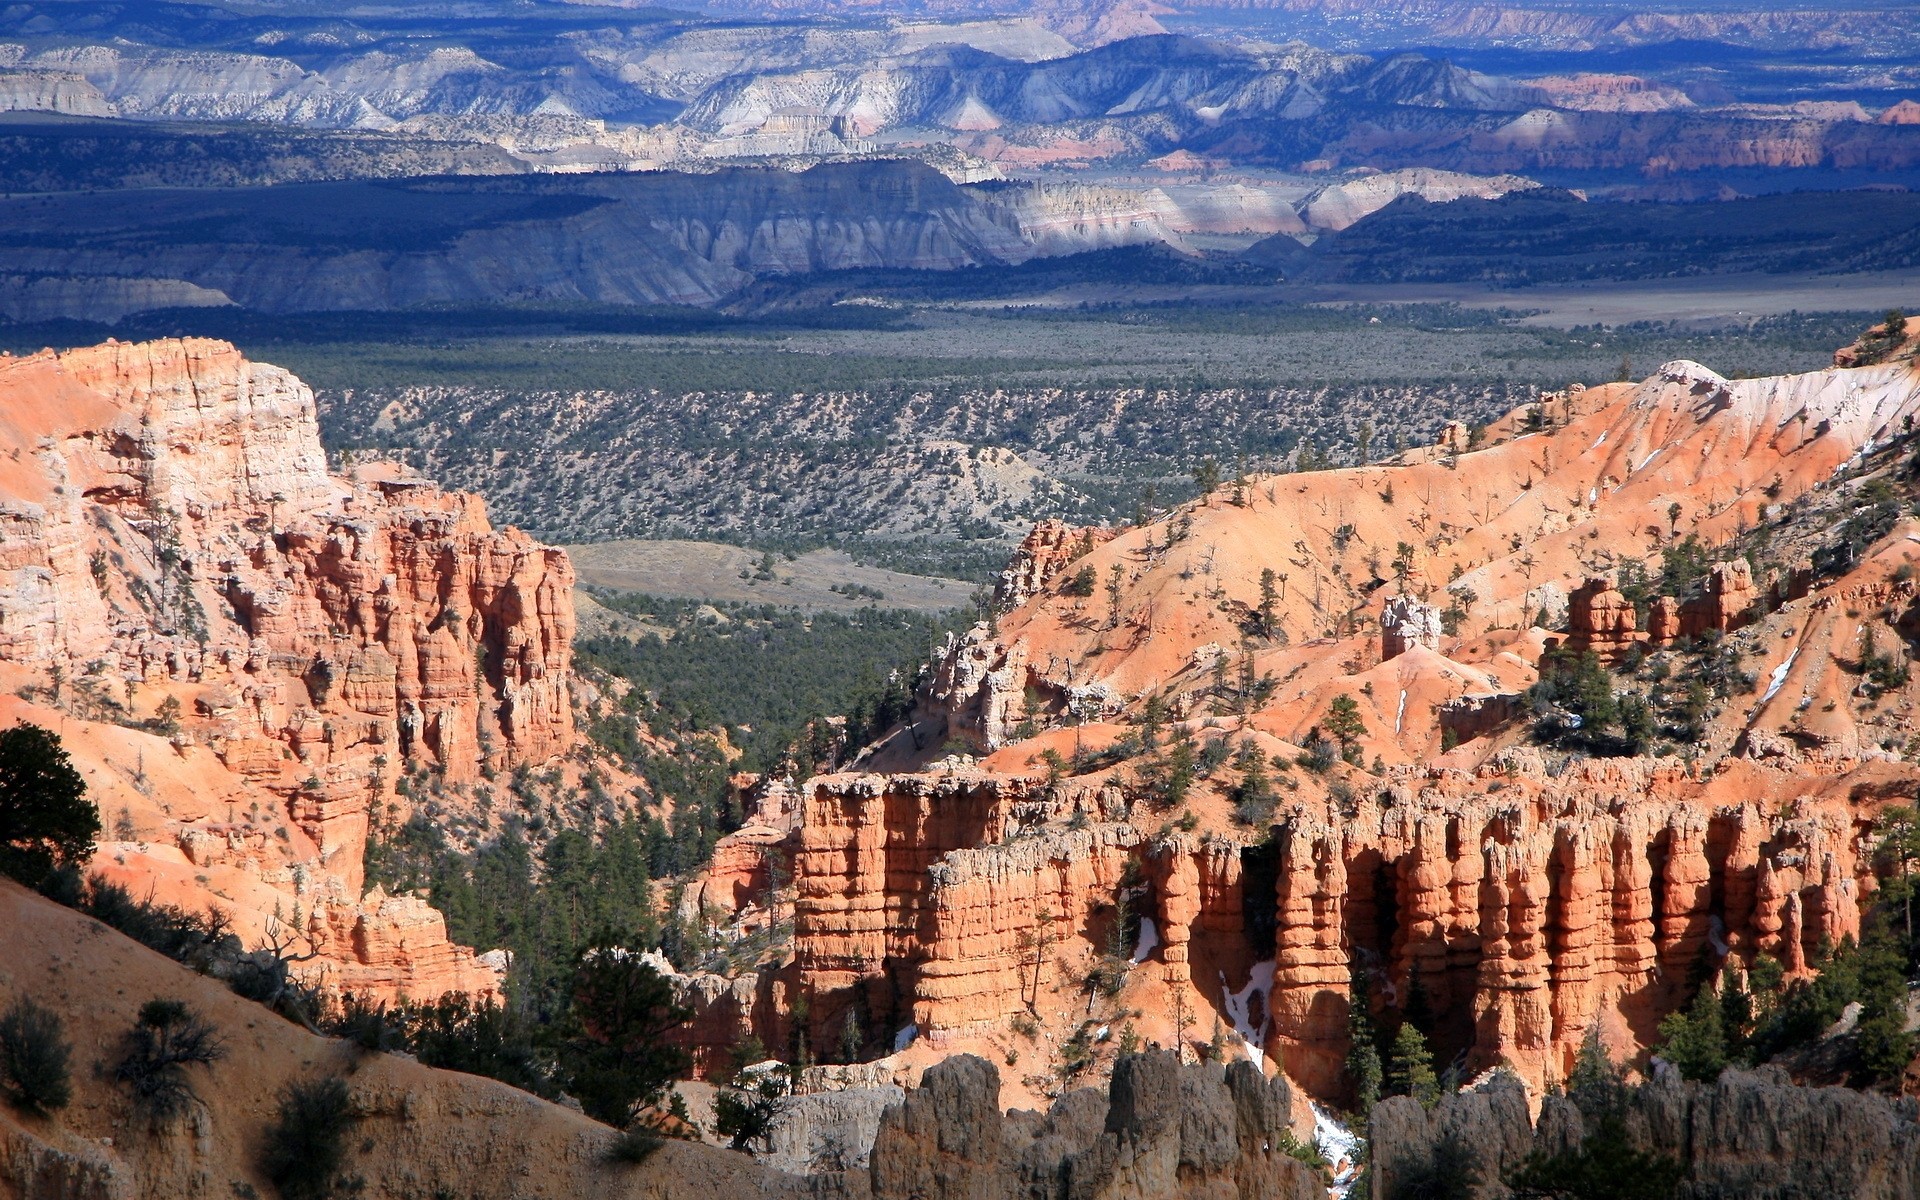 сша пейзаж каньон путешествия живописный песчаник геология на открытом воздухе рок эрозия небо горы природа пустыня долина туризм зрелище камни бна каньон